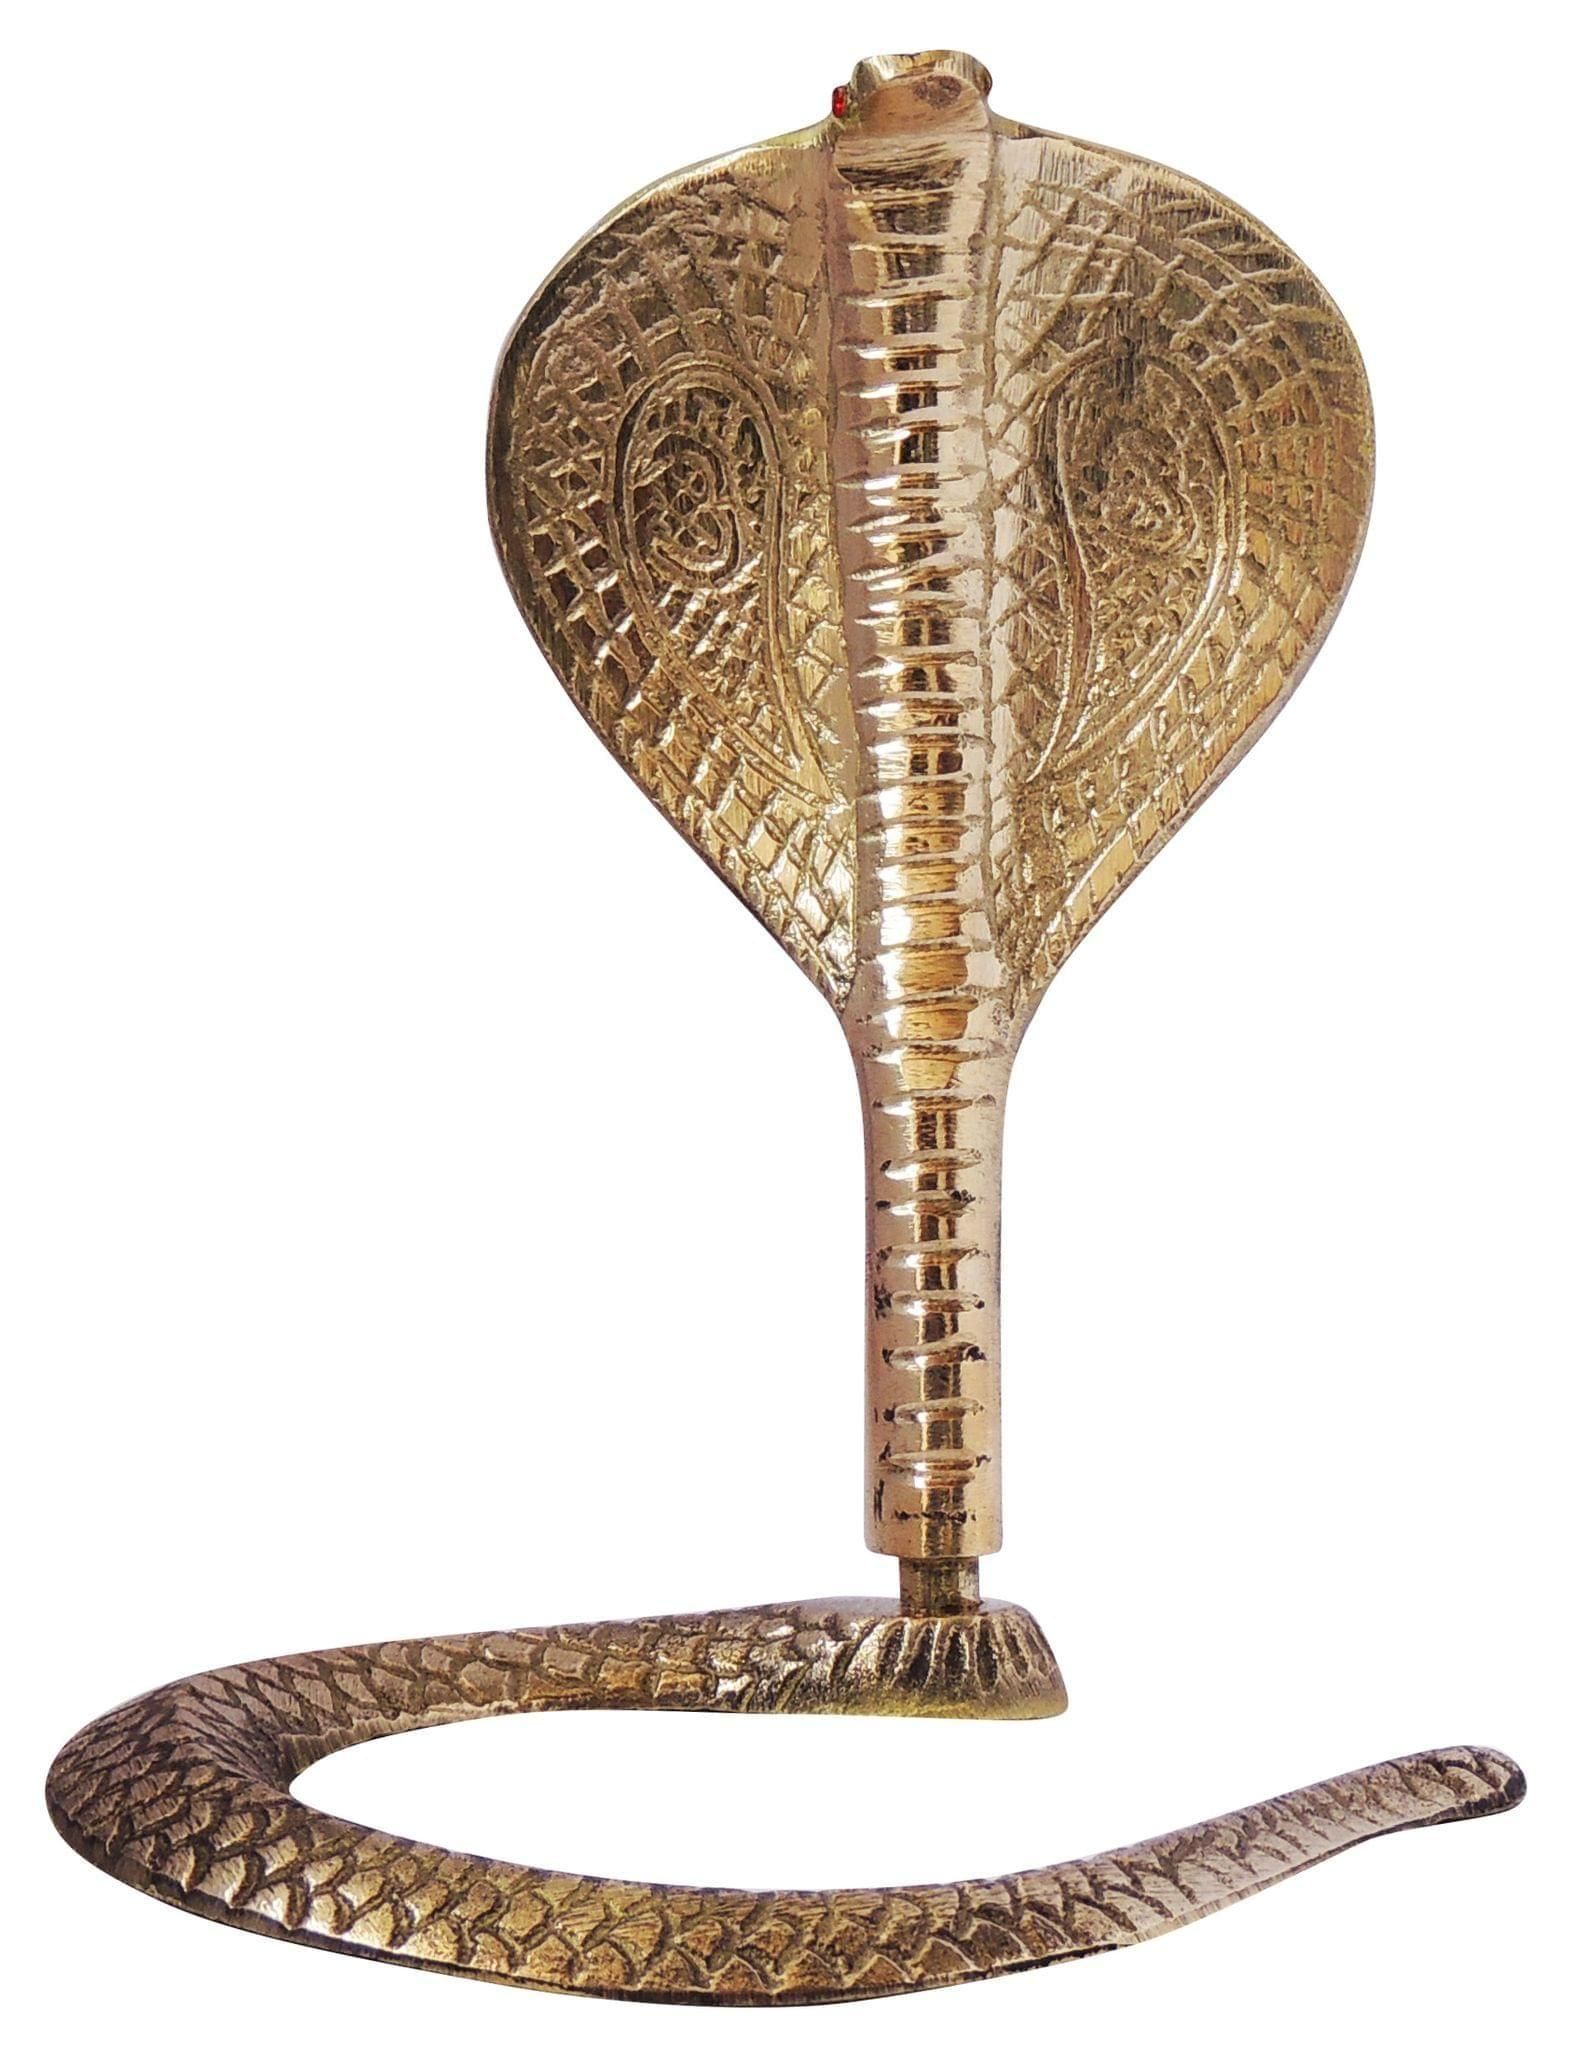 Brass Snake (For Shivling) - 4.4*4.8*6.5 inch (Z299 D)